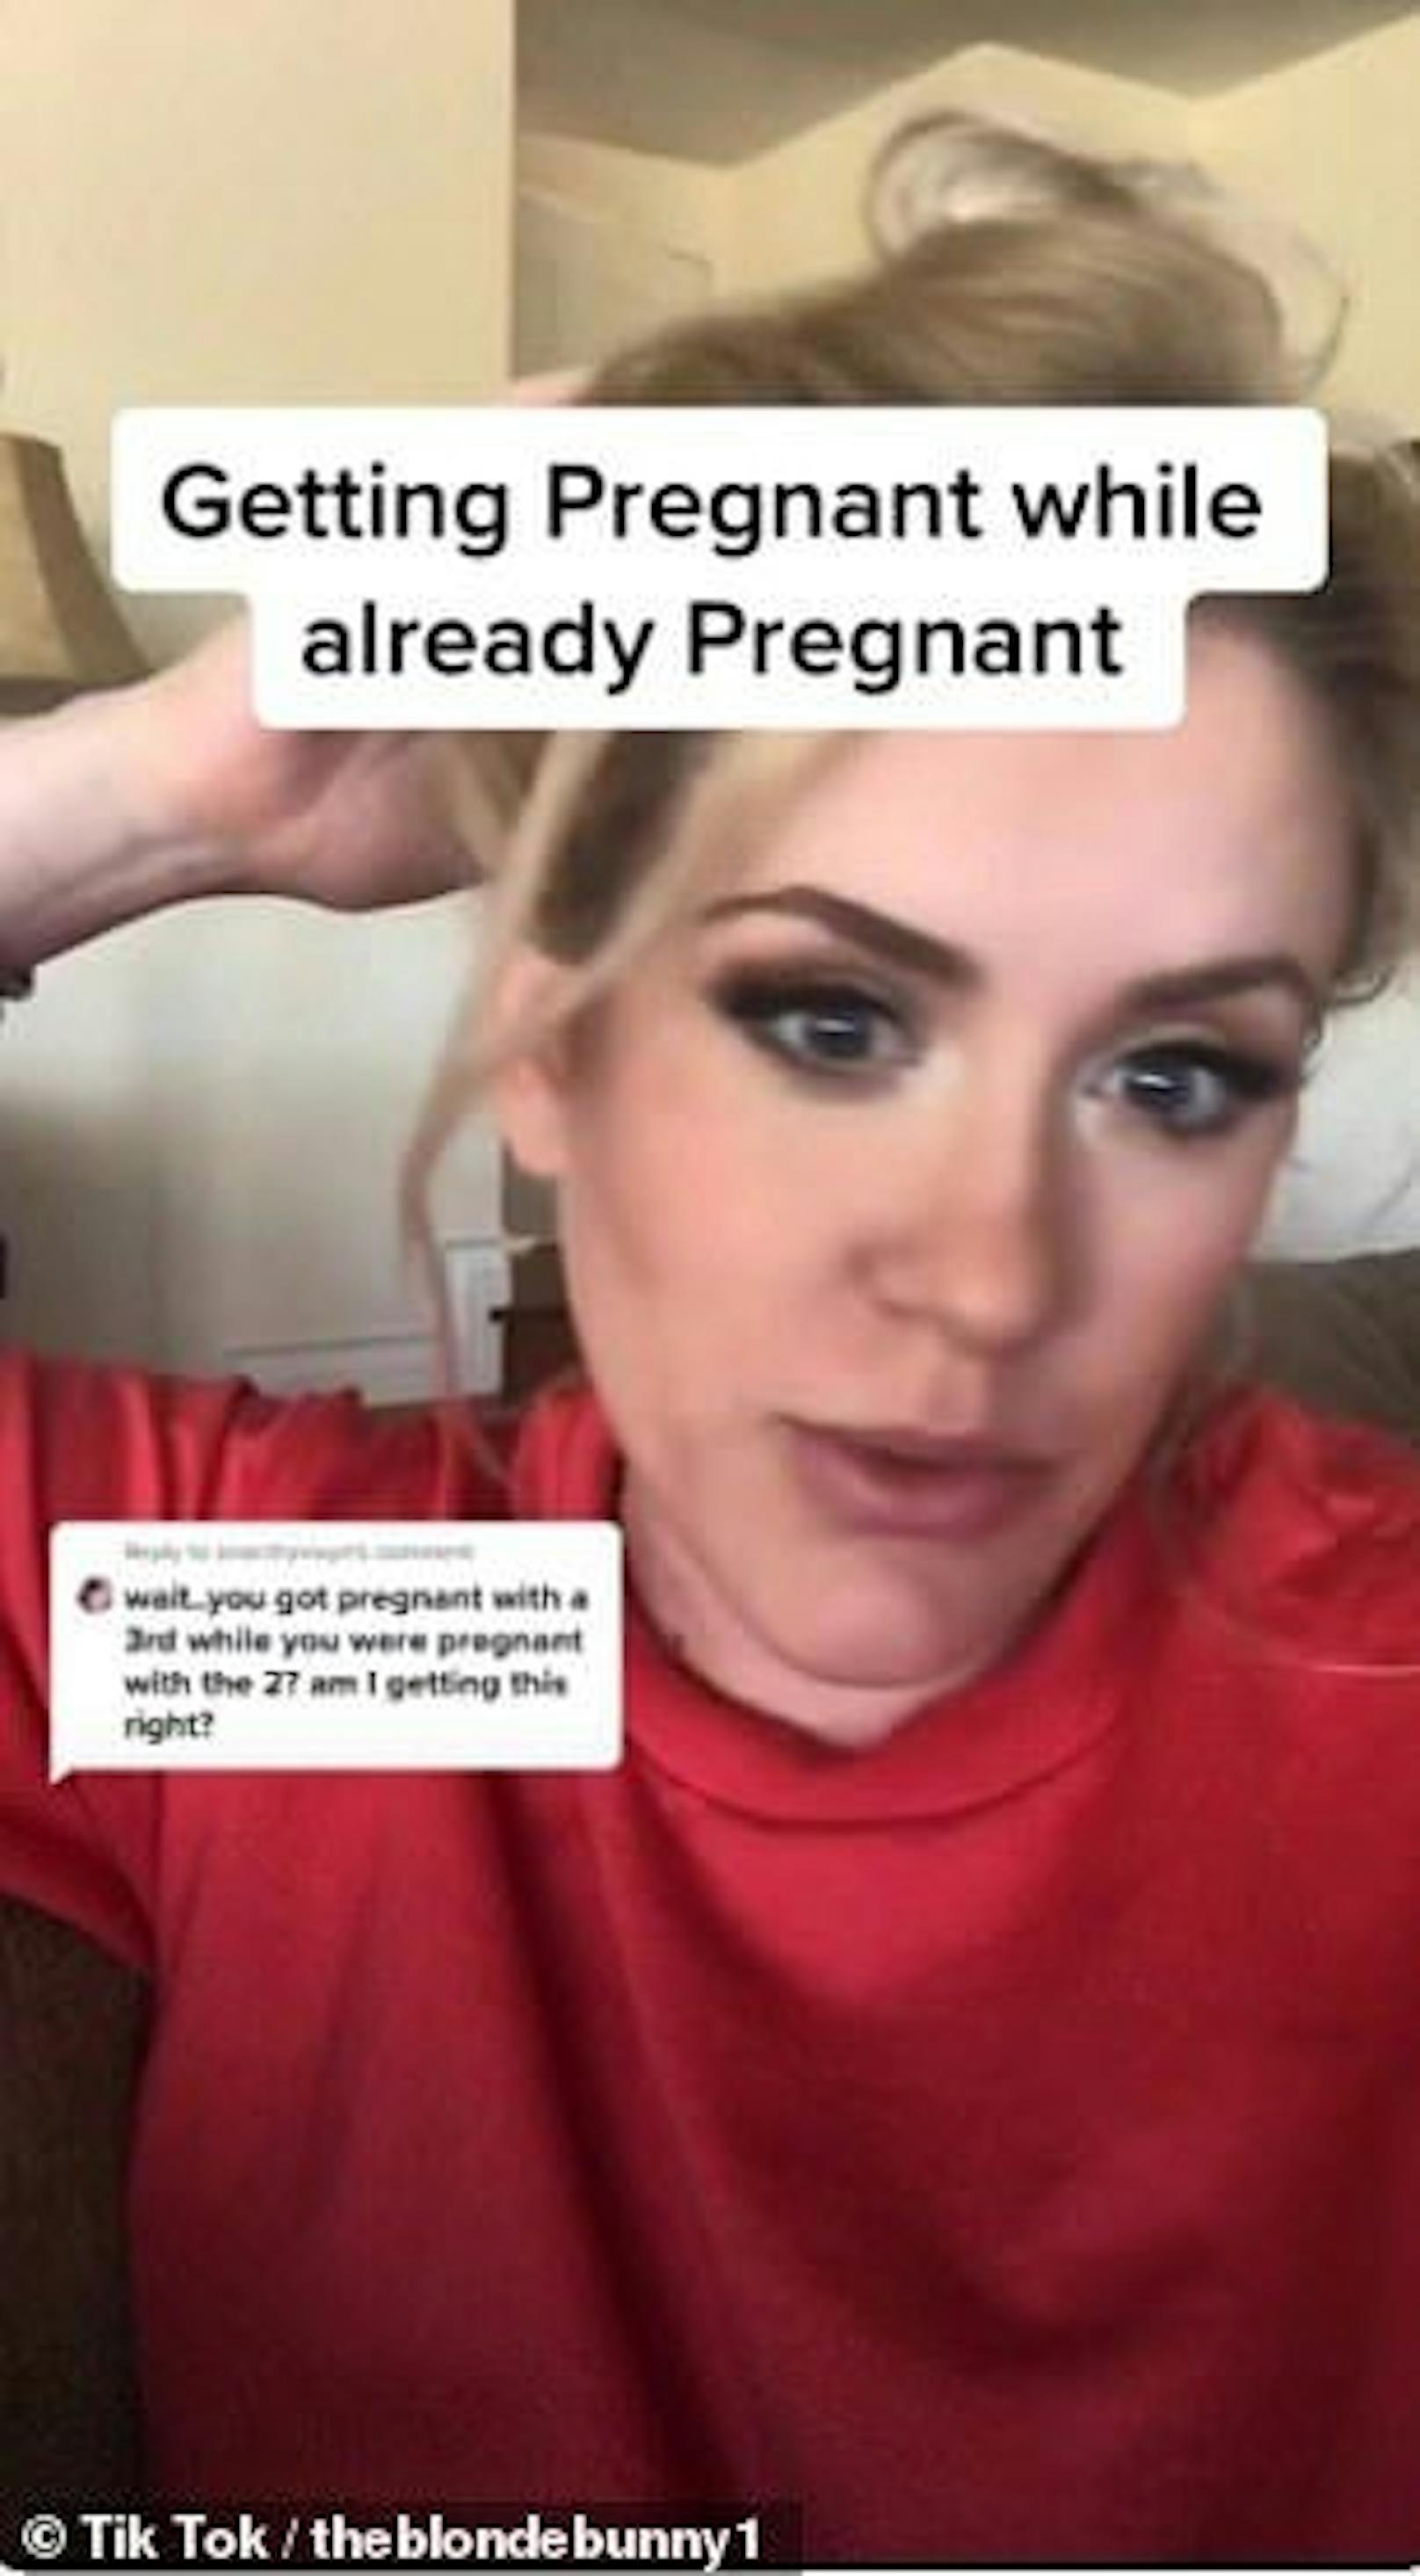 "Eigentlich sollen deine Hormone dafür sorgen, dass du während der Schwangerschaft keinen Eisprung mehr hast – bei mir war es anders", erklärt die werdende Mutter in einem TikTok-Video.